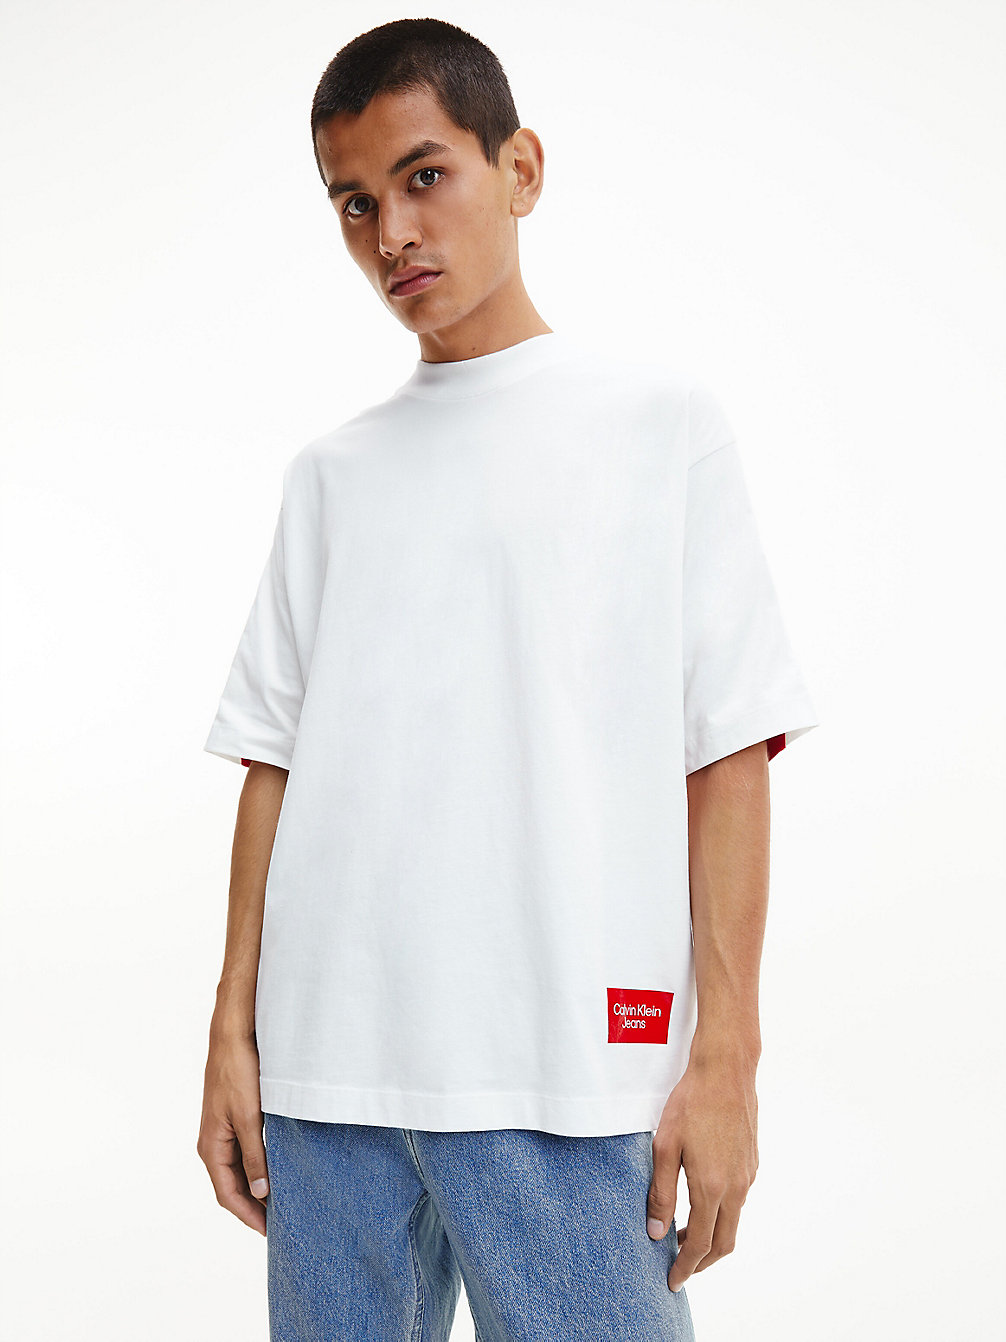 BRIGHT WHITE > Luźny T-Shirt Z Logo Z Tyłu > undefined Mężczyźni - Calvin Klein